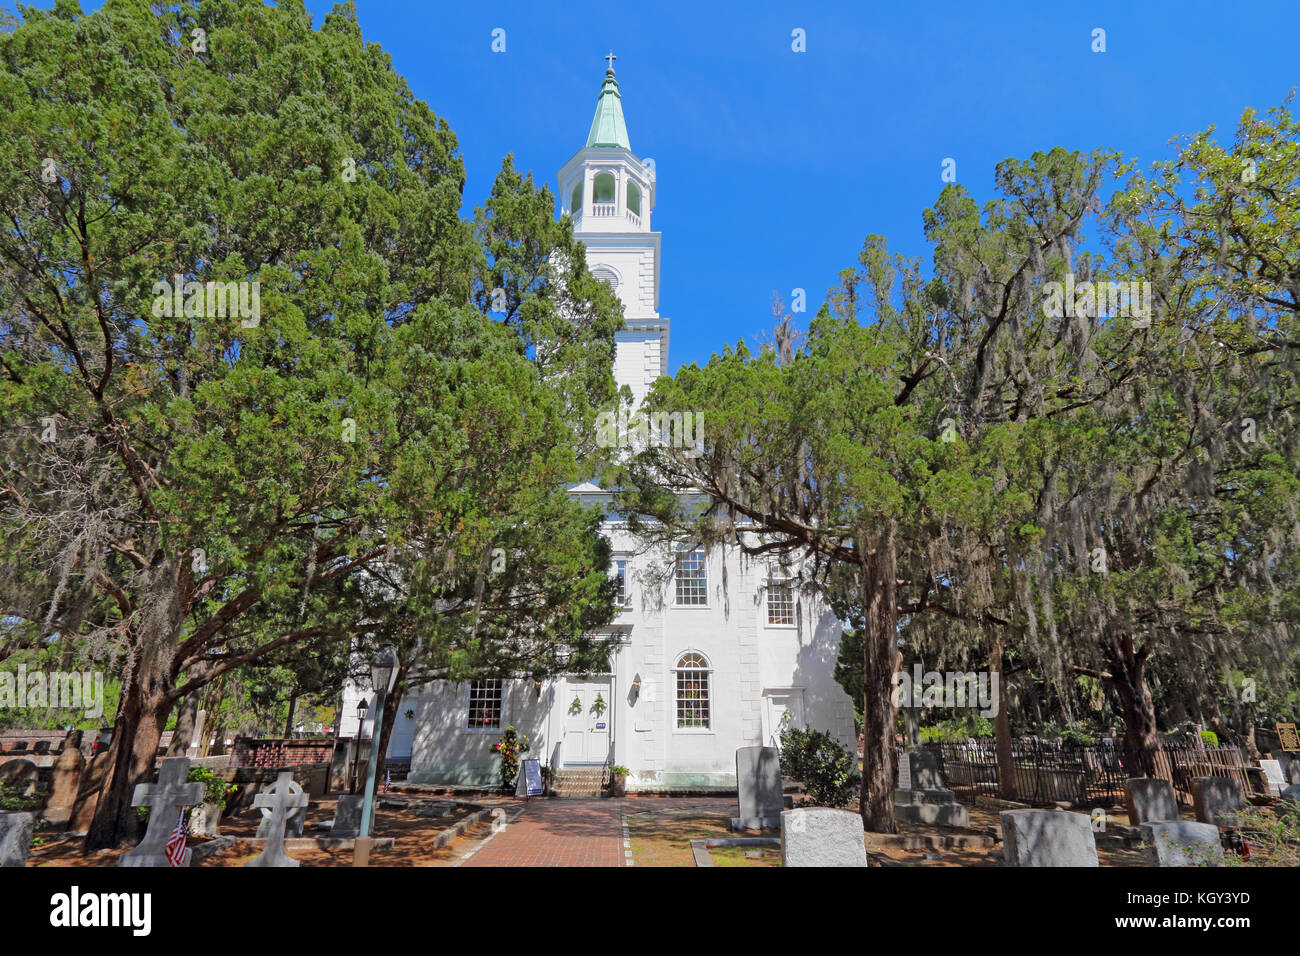 Beaufort, South Carolina - 16. April 2017: Hauptgebäude, Turm und ein Teil der Friedhof an der Pfarrkirche St. Helena. Das derzeitige Gebäude Datum Stockfoto